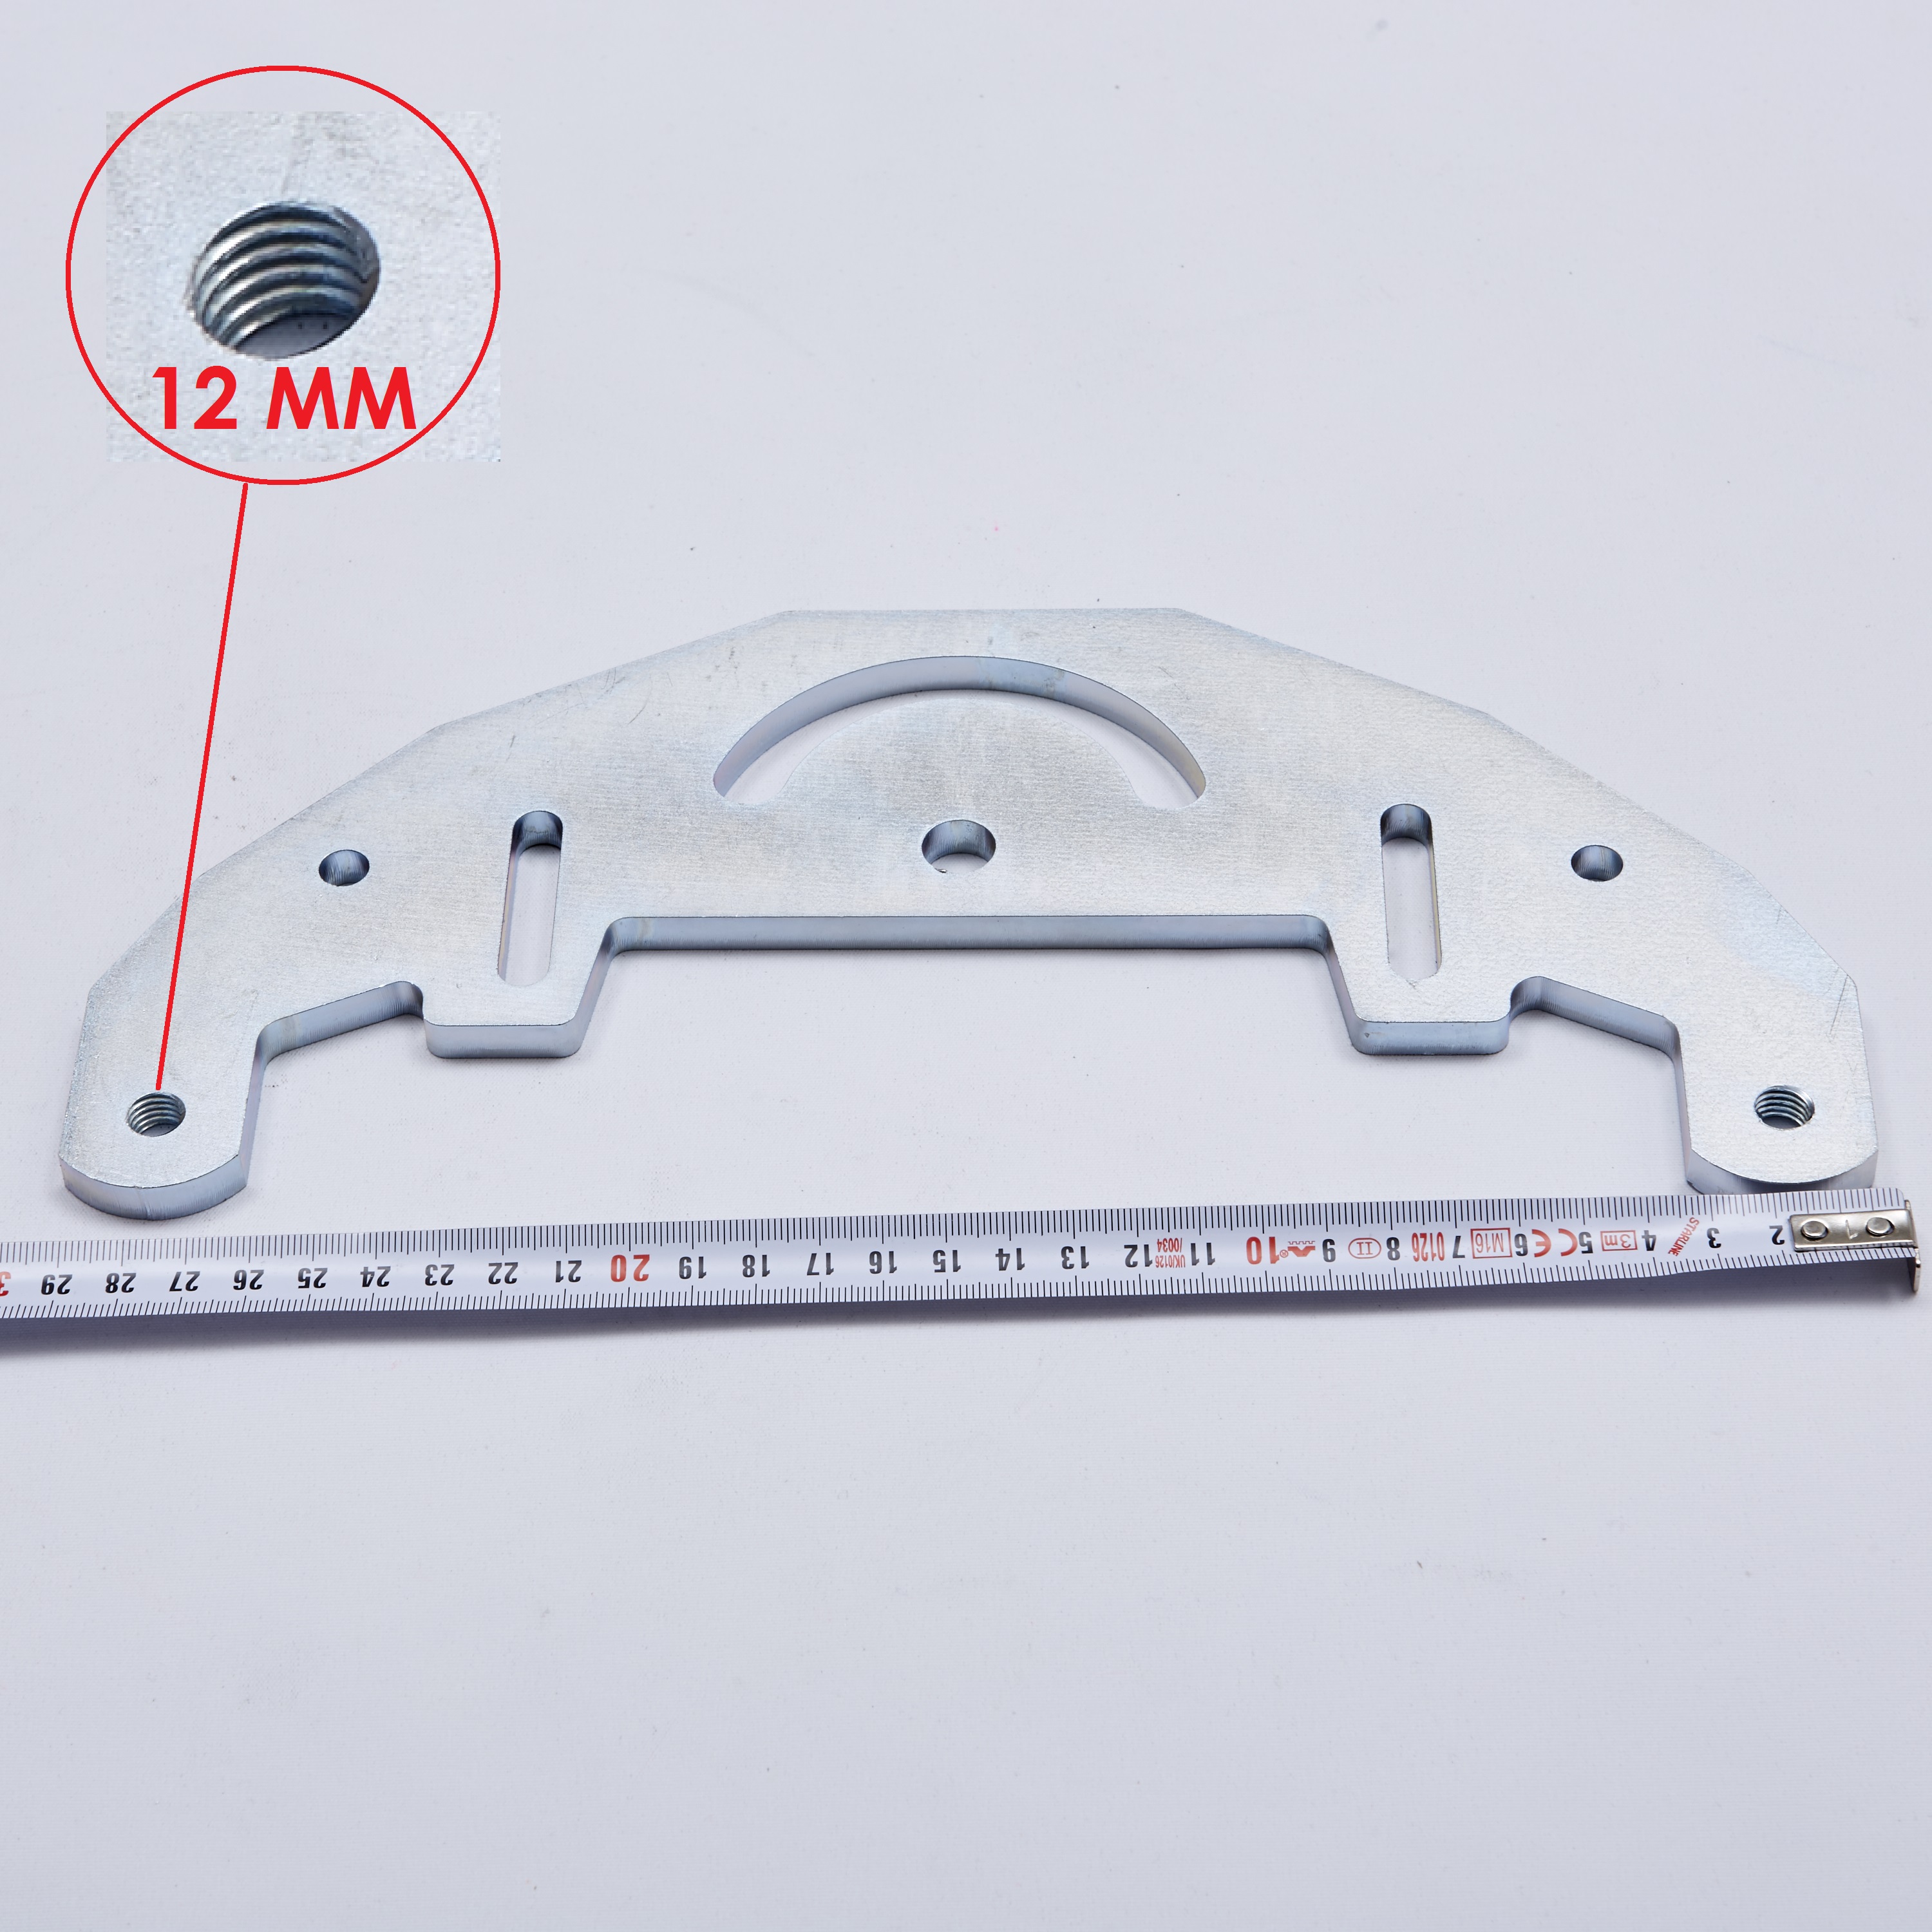 TR Maker Belt Grinder plate for 2x72" knife making grinder / belt grinder M12 Steel parts